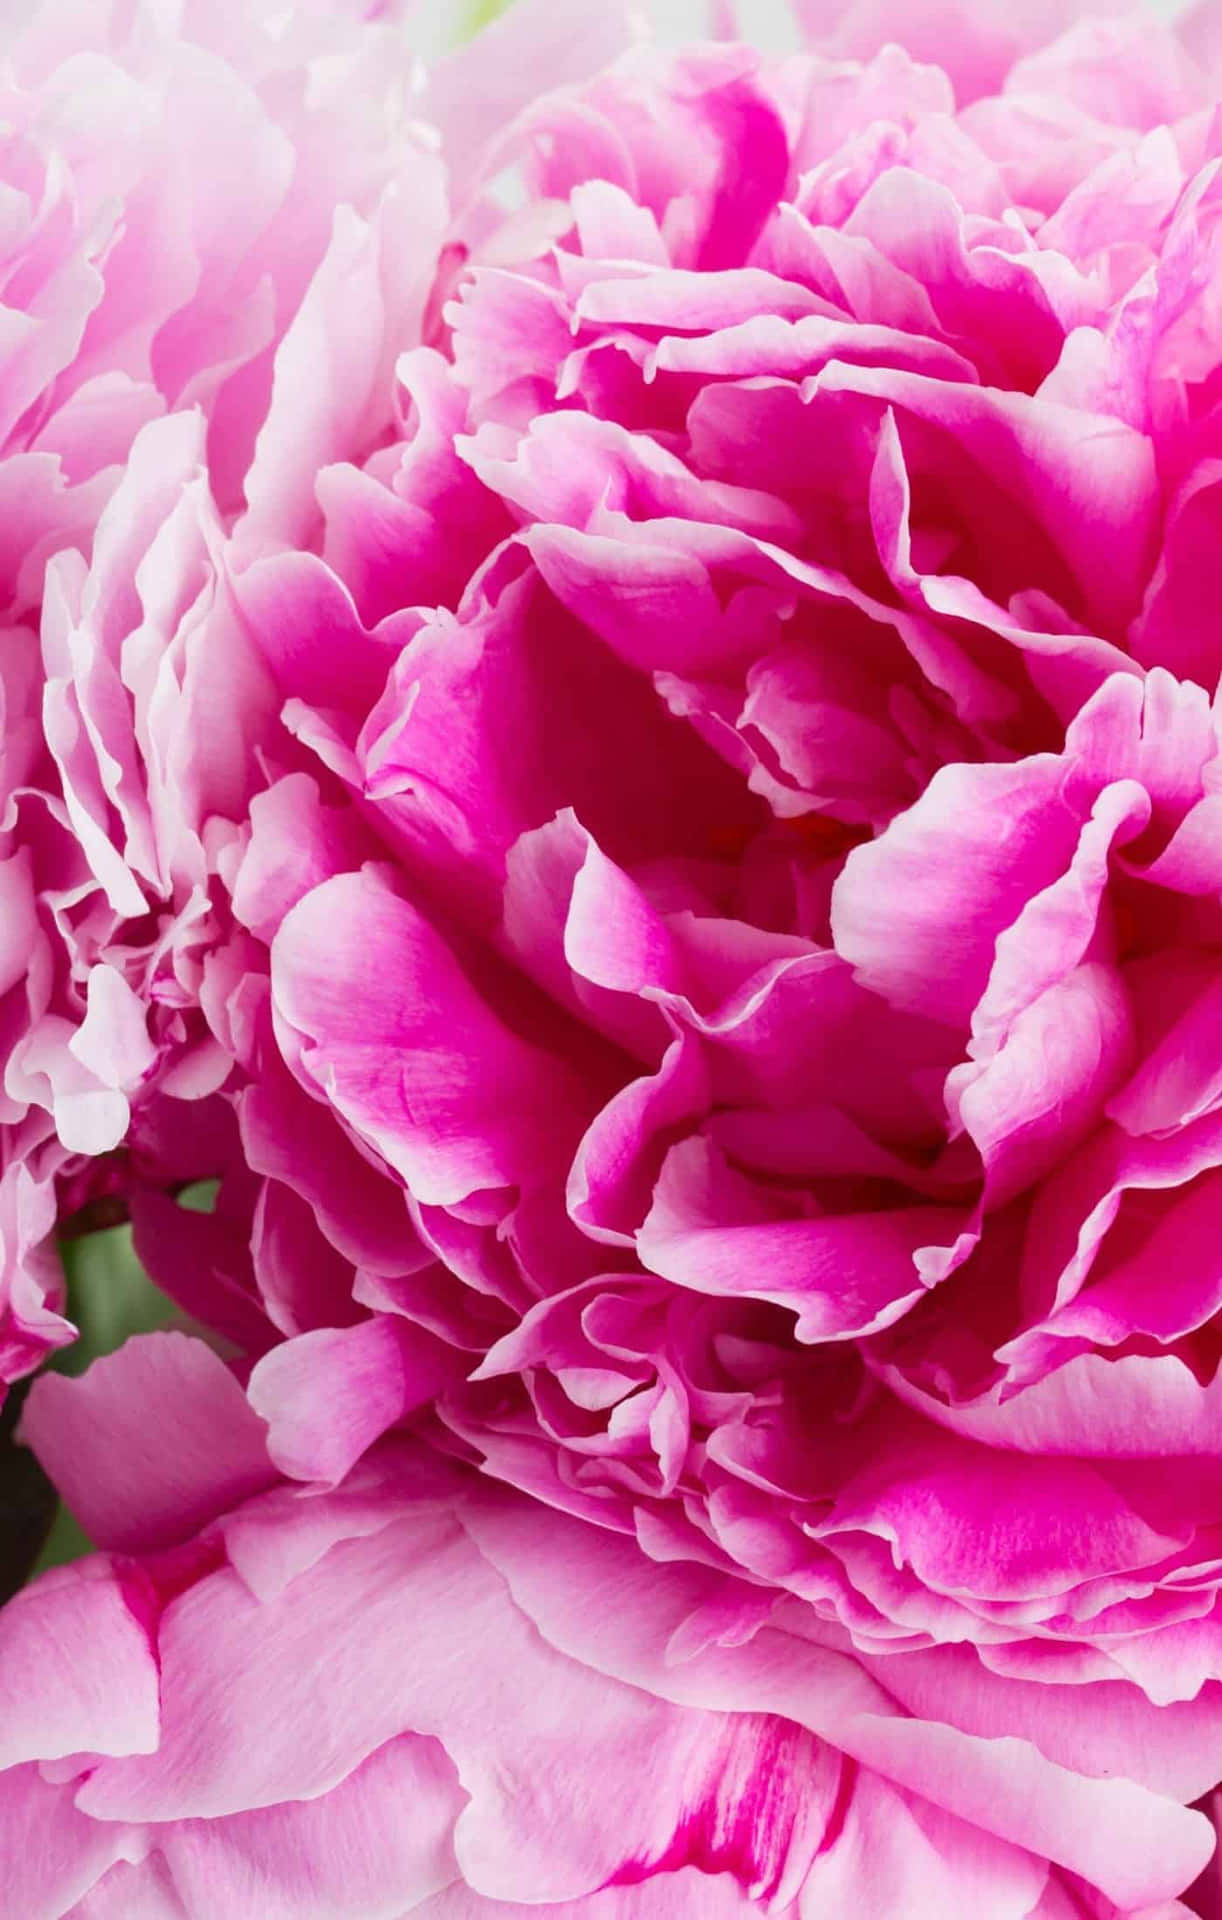 Entdeckedie Schönheit Der Natur: Eine Rosa Blume, Die Dein Telefon Schmückt Wallpaper